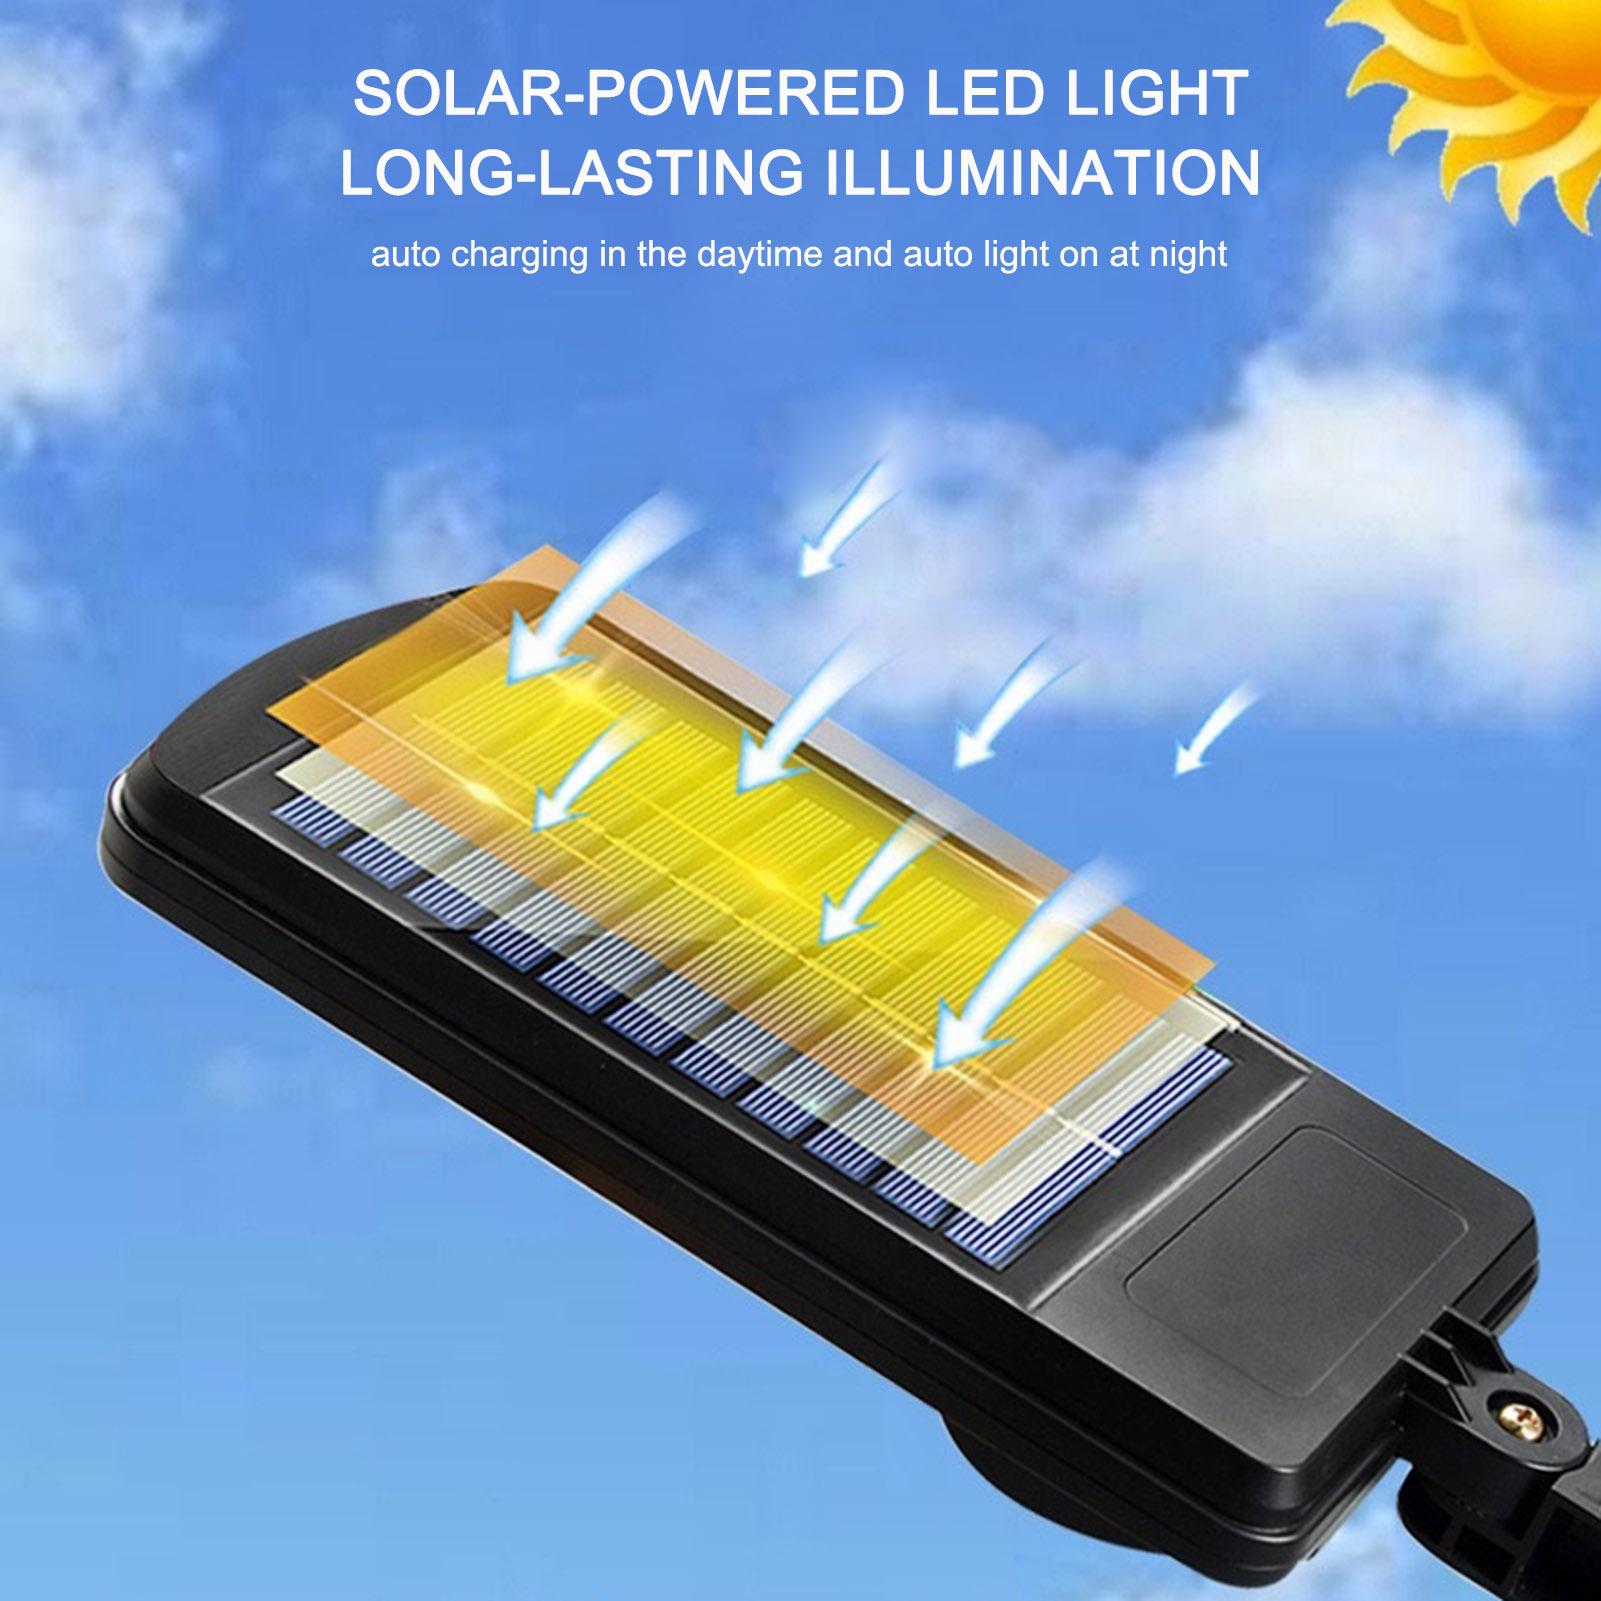 Hình ảnh Đèn LED cảm biến chuyển động chạy bằng năng lượng mặt trời với điều khiển từ xa 3 chế độ